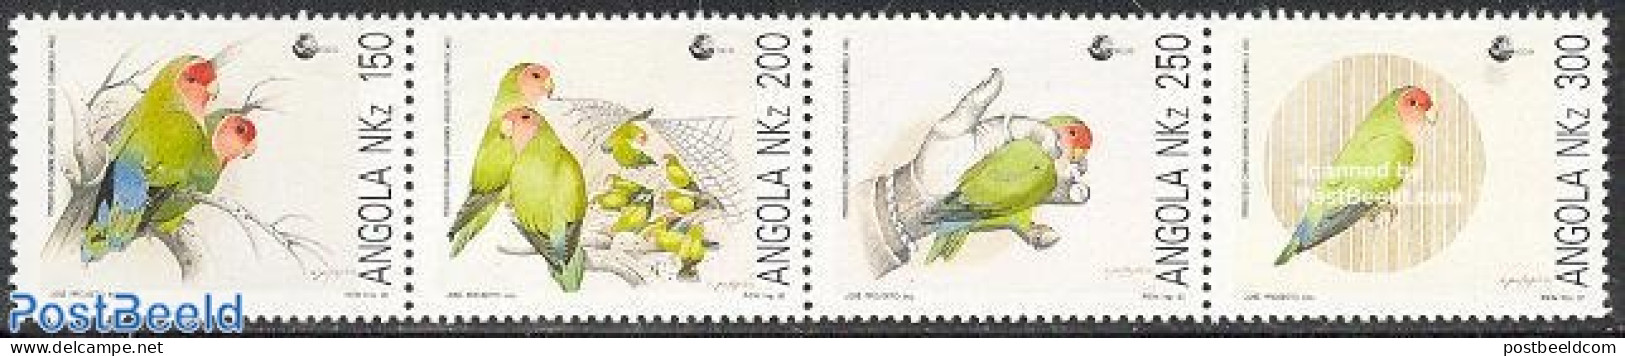 Angola 1992 Birds 4v [:::], Mint NH, Nature - Birds - Parrots - Angola